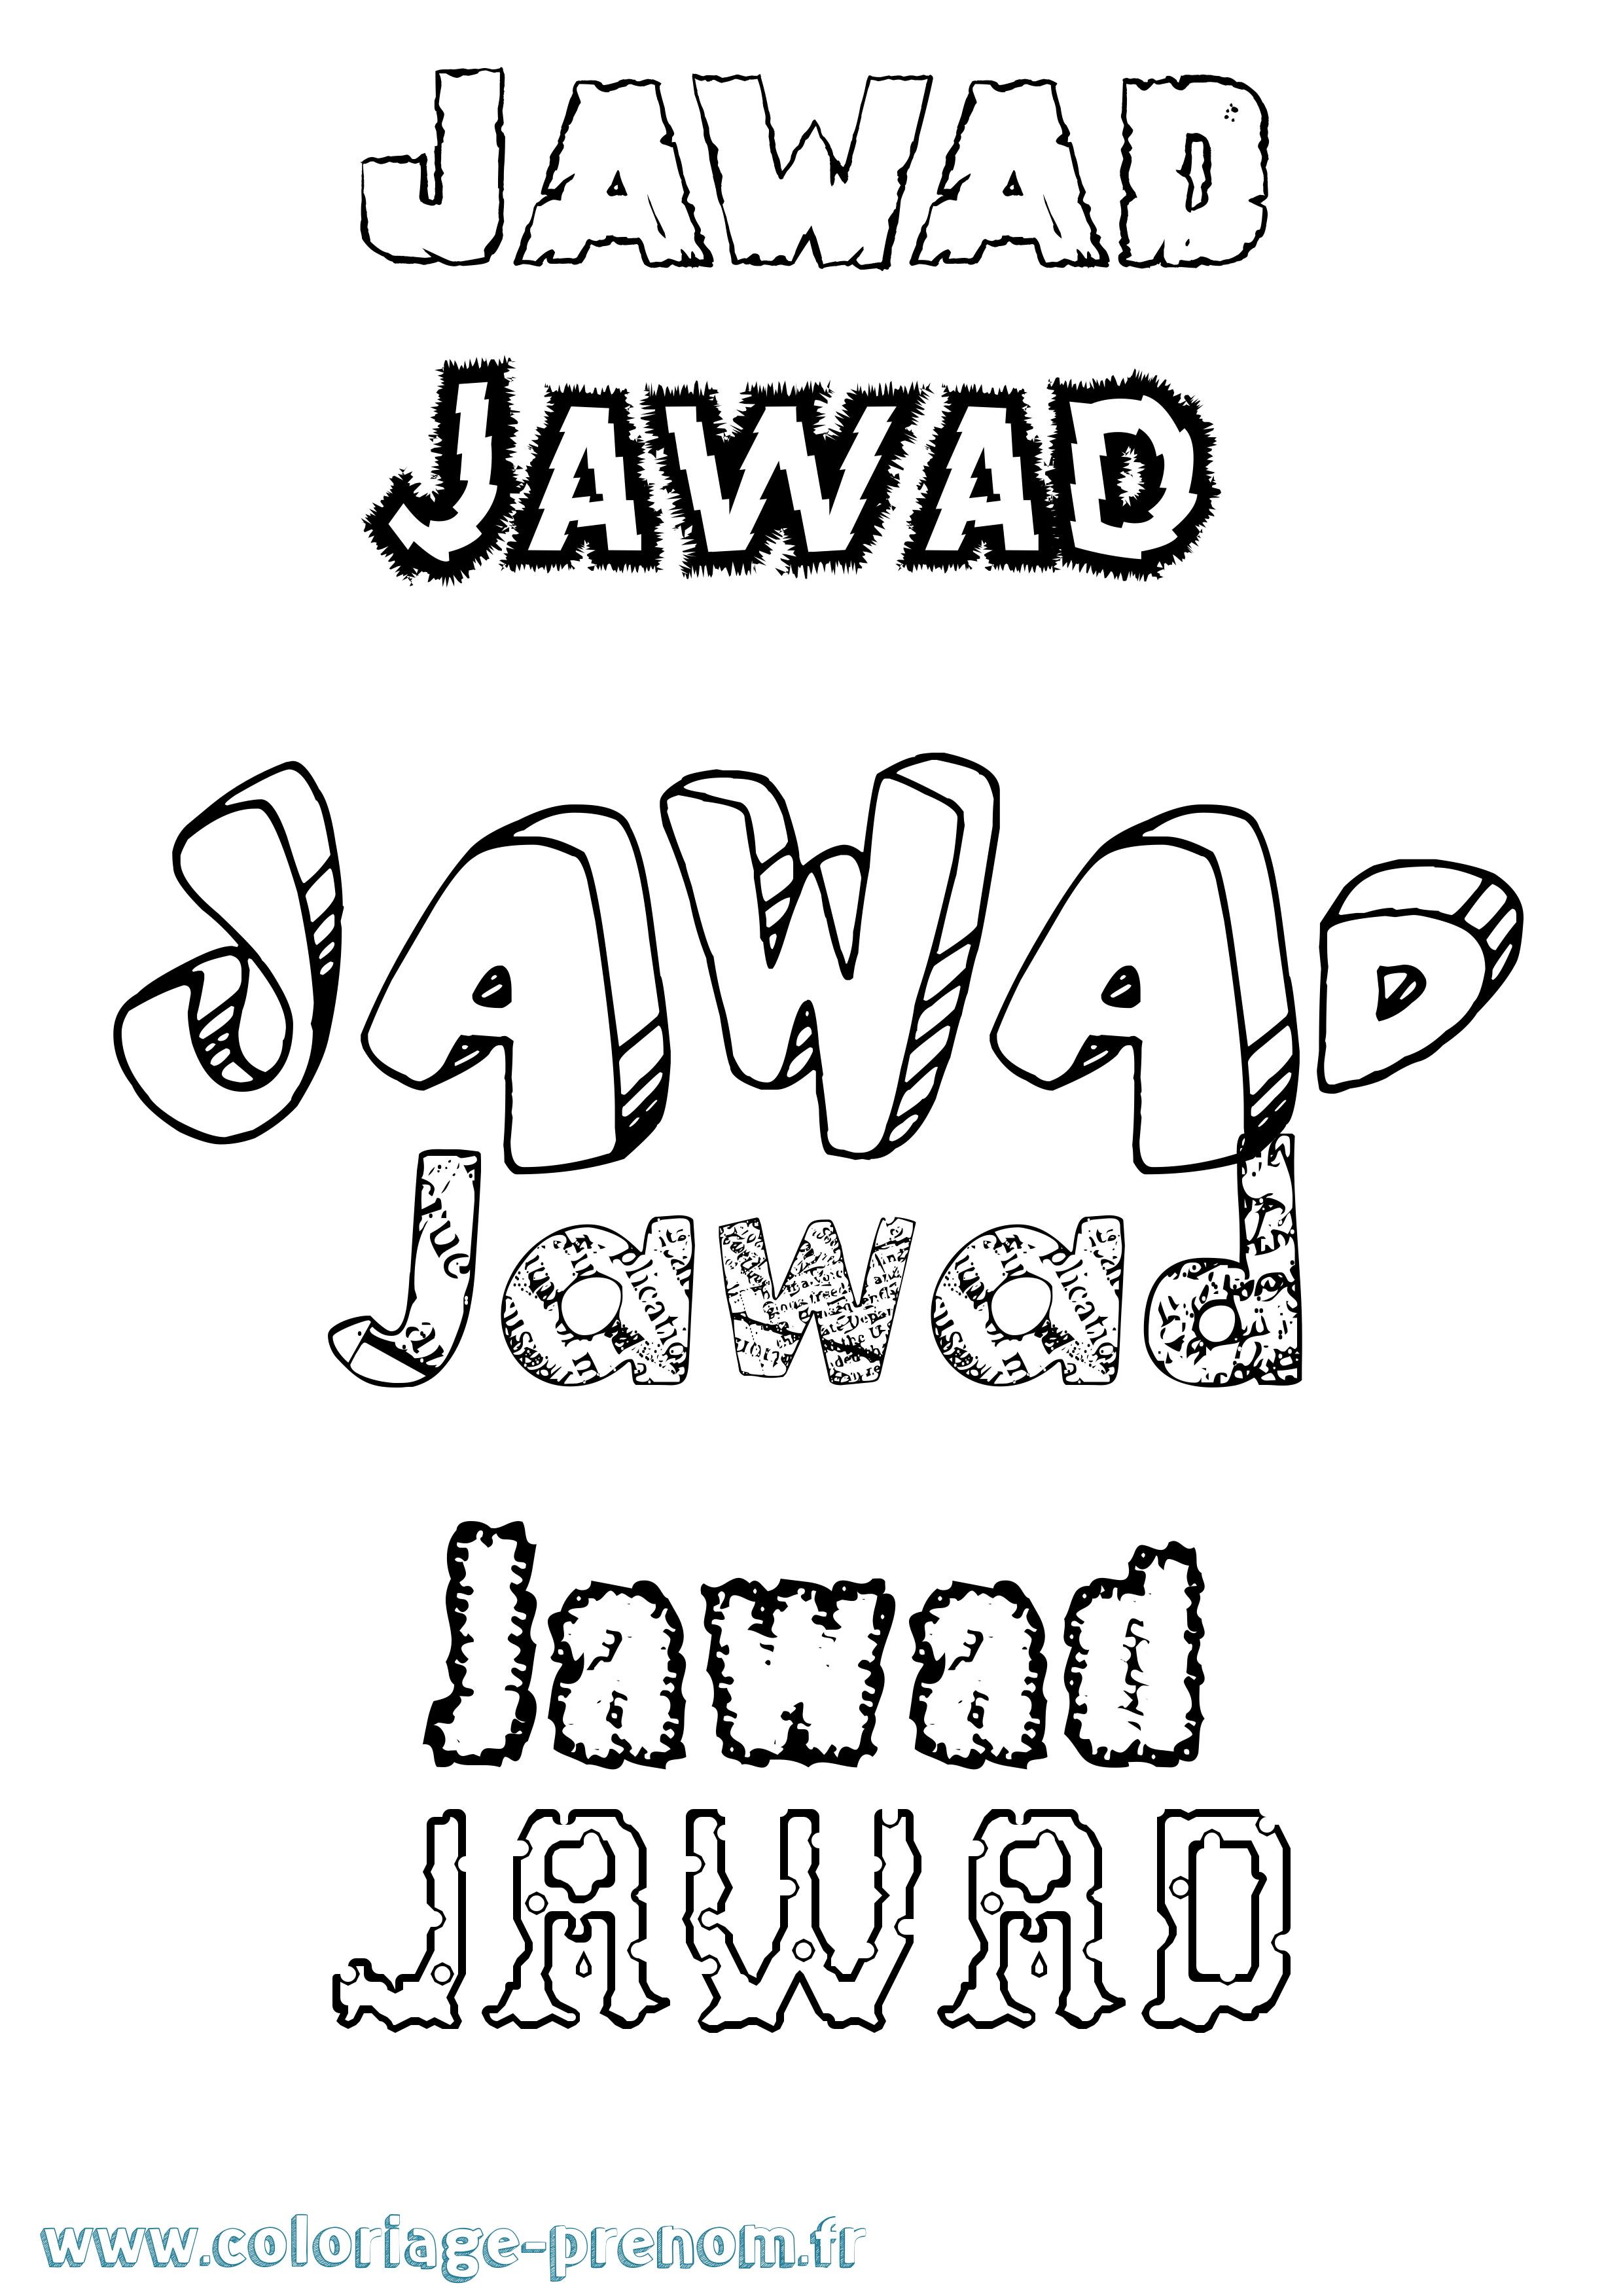 Coloriage prénom Jawad